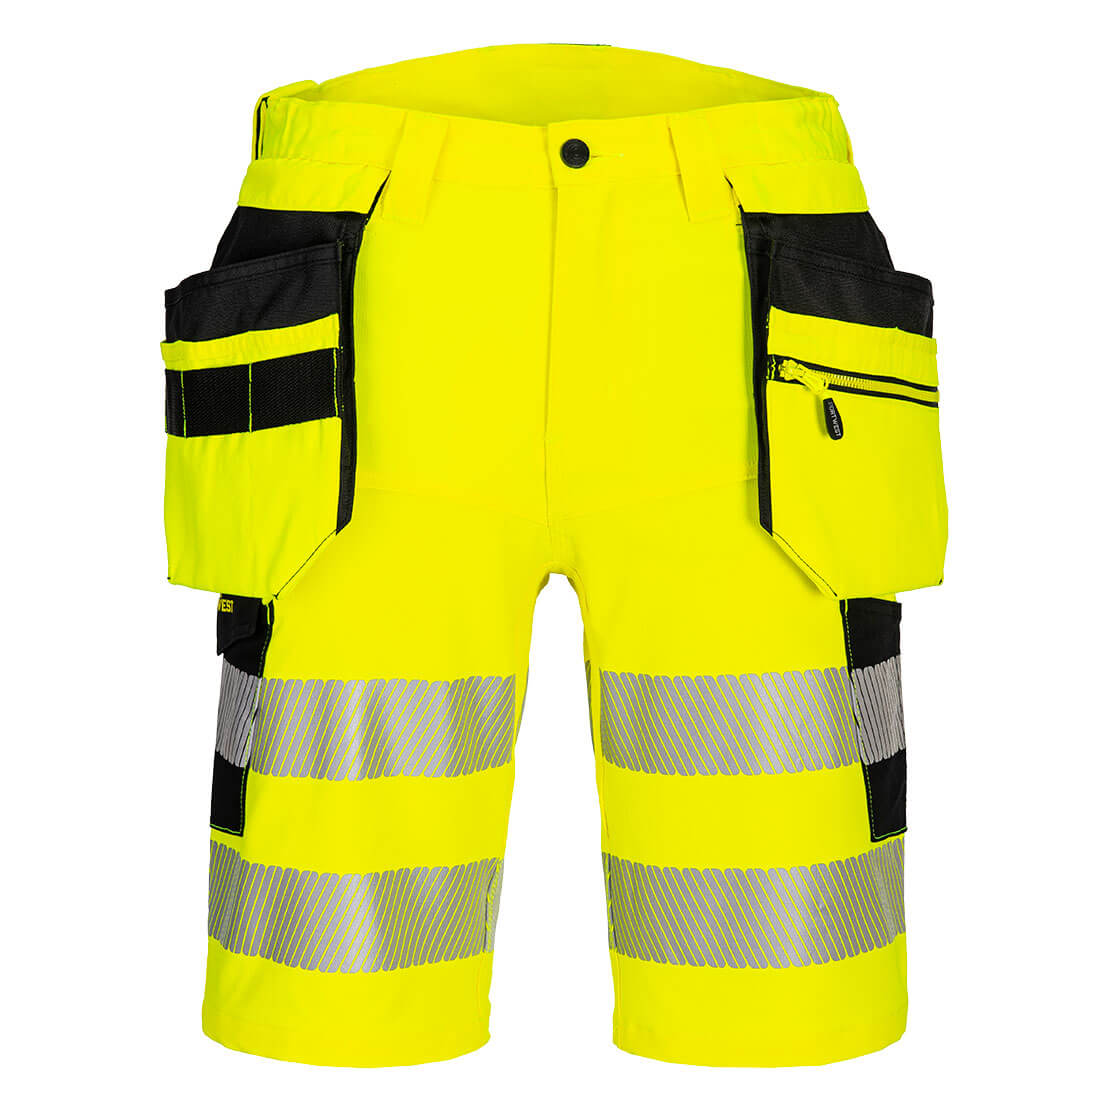 DX4 Hi-Vis Holster Pocket Shorts DX446 Yellow/Black Size 30 Fit R